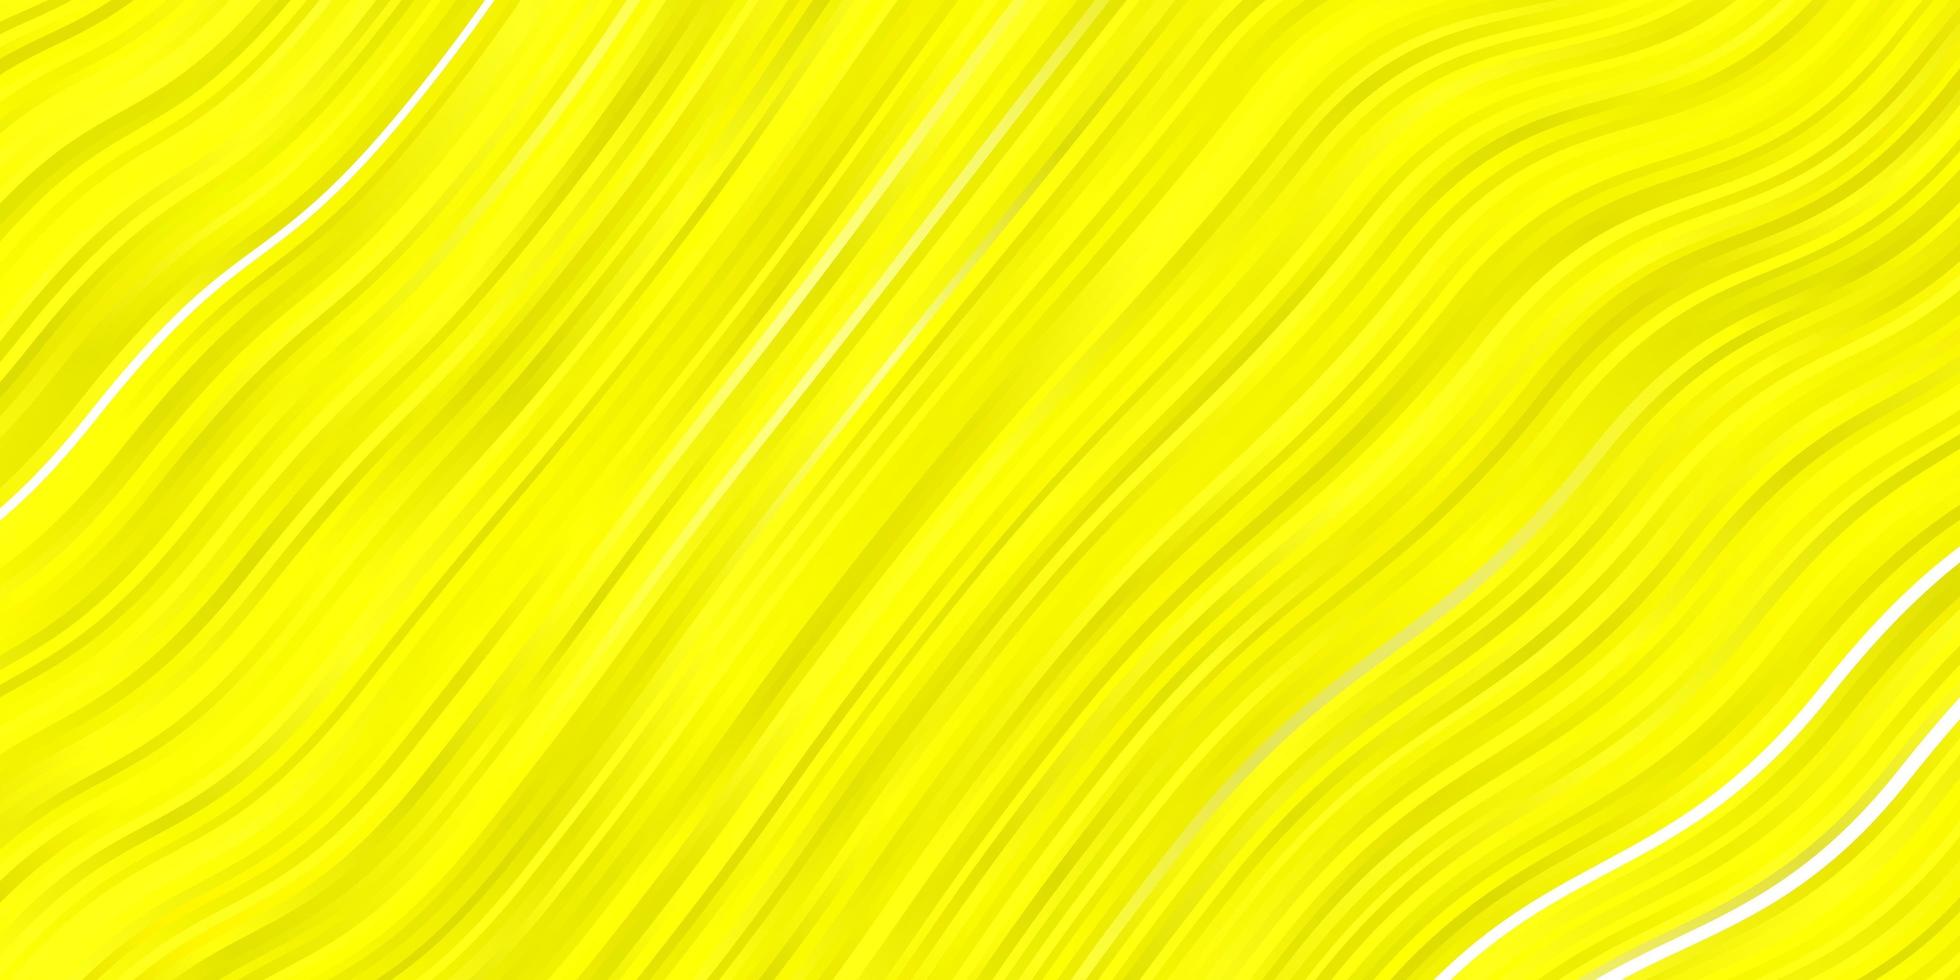 textura de vetor amarelo claro com arco circular nova ilustração colorida com padrão de linhas dobradas para folhetos de livretos